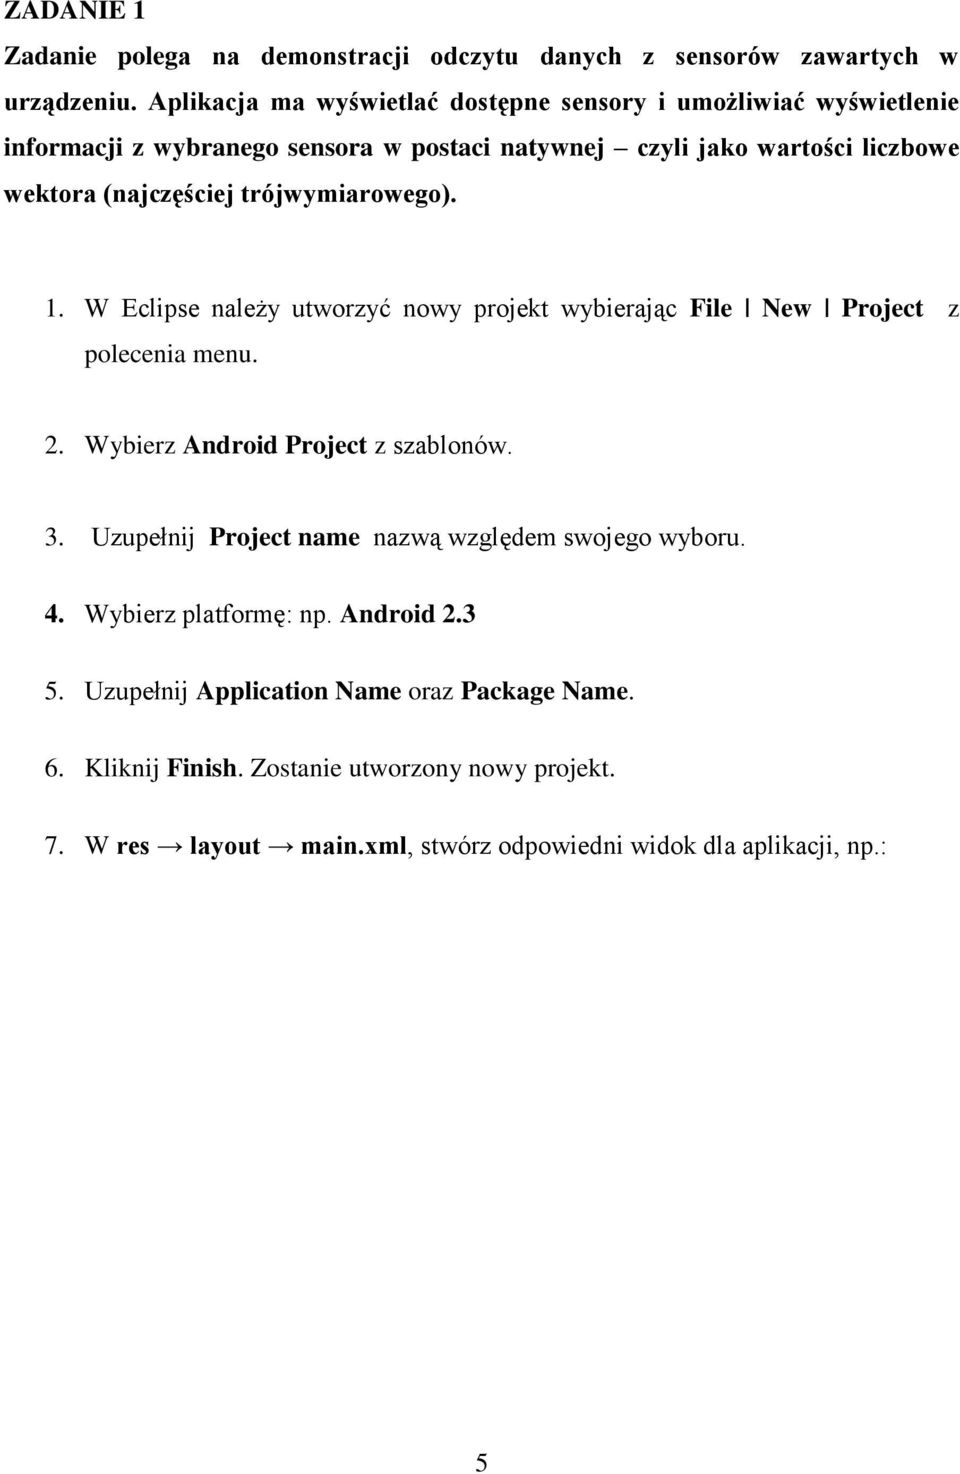 trójwymiarowego). 1. W Eclipse należy utworzyć nowy projekt wybierając File New Project z polecenia menu. 2. Wybierz Android Project z szablonów. 3.